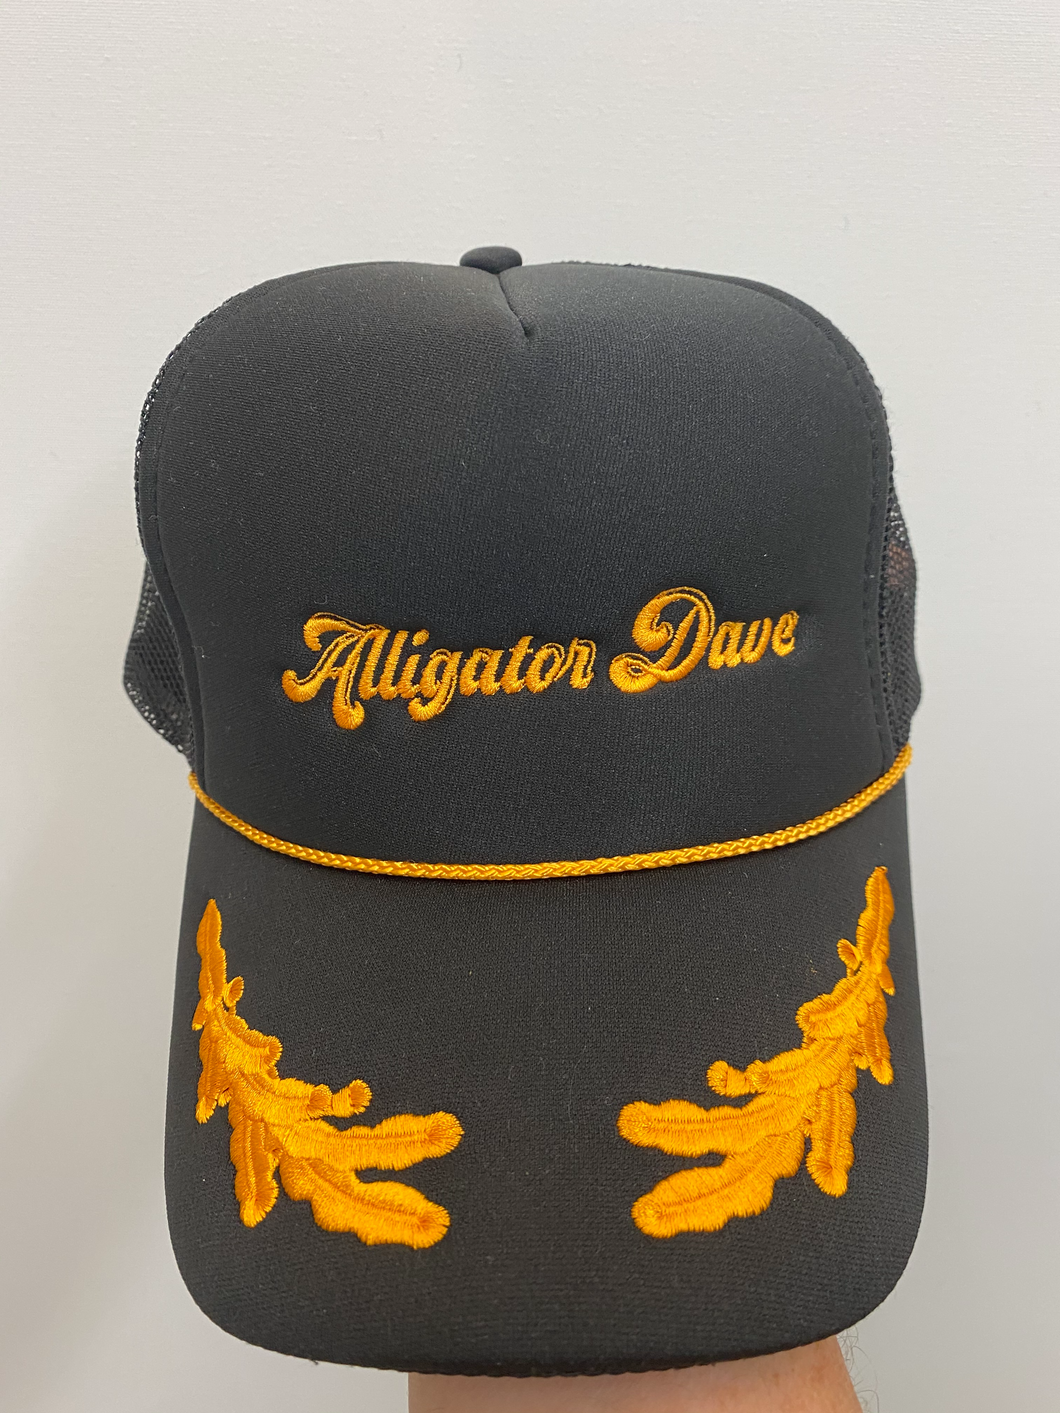 Alligator Dave Trucker Hat!